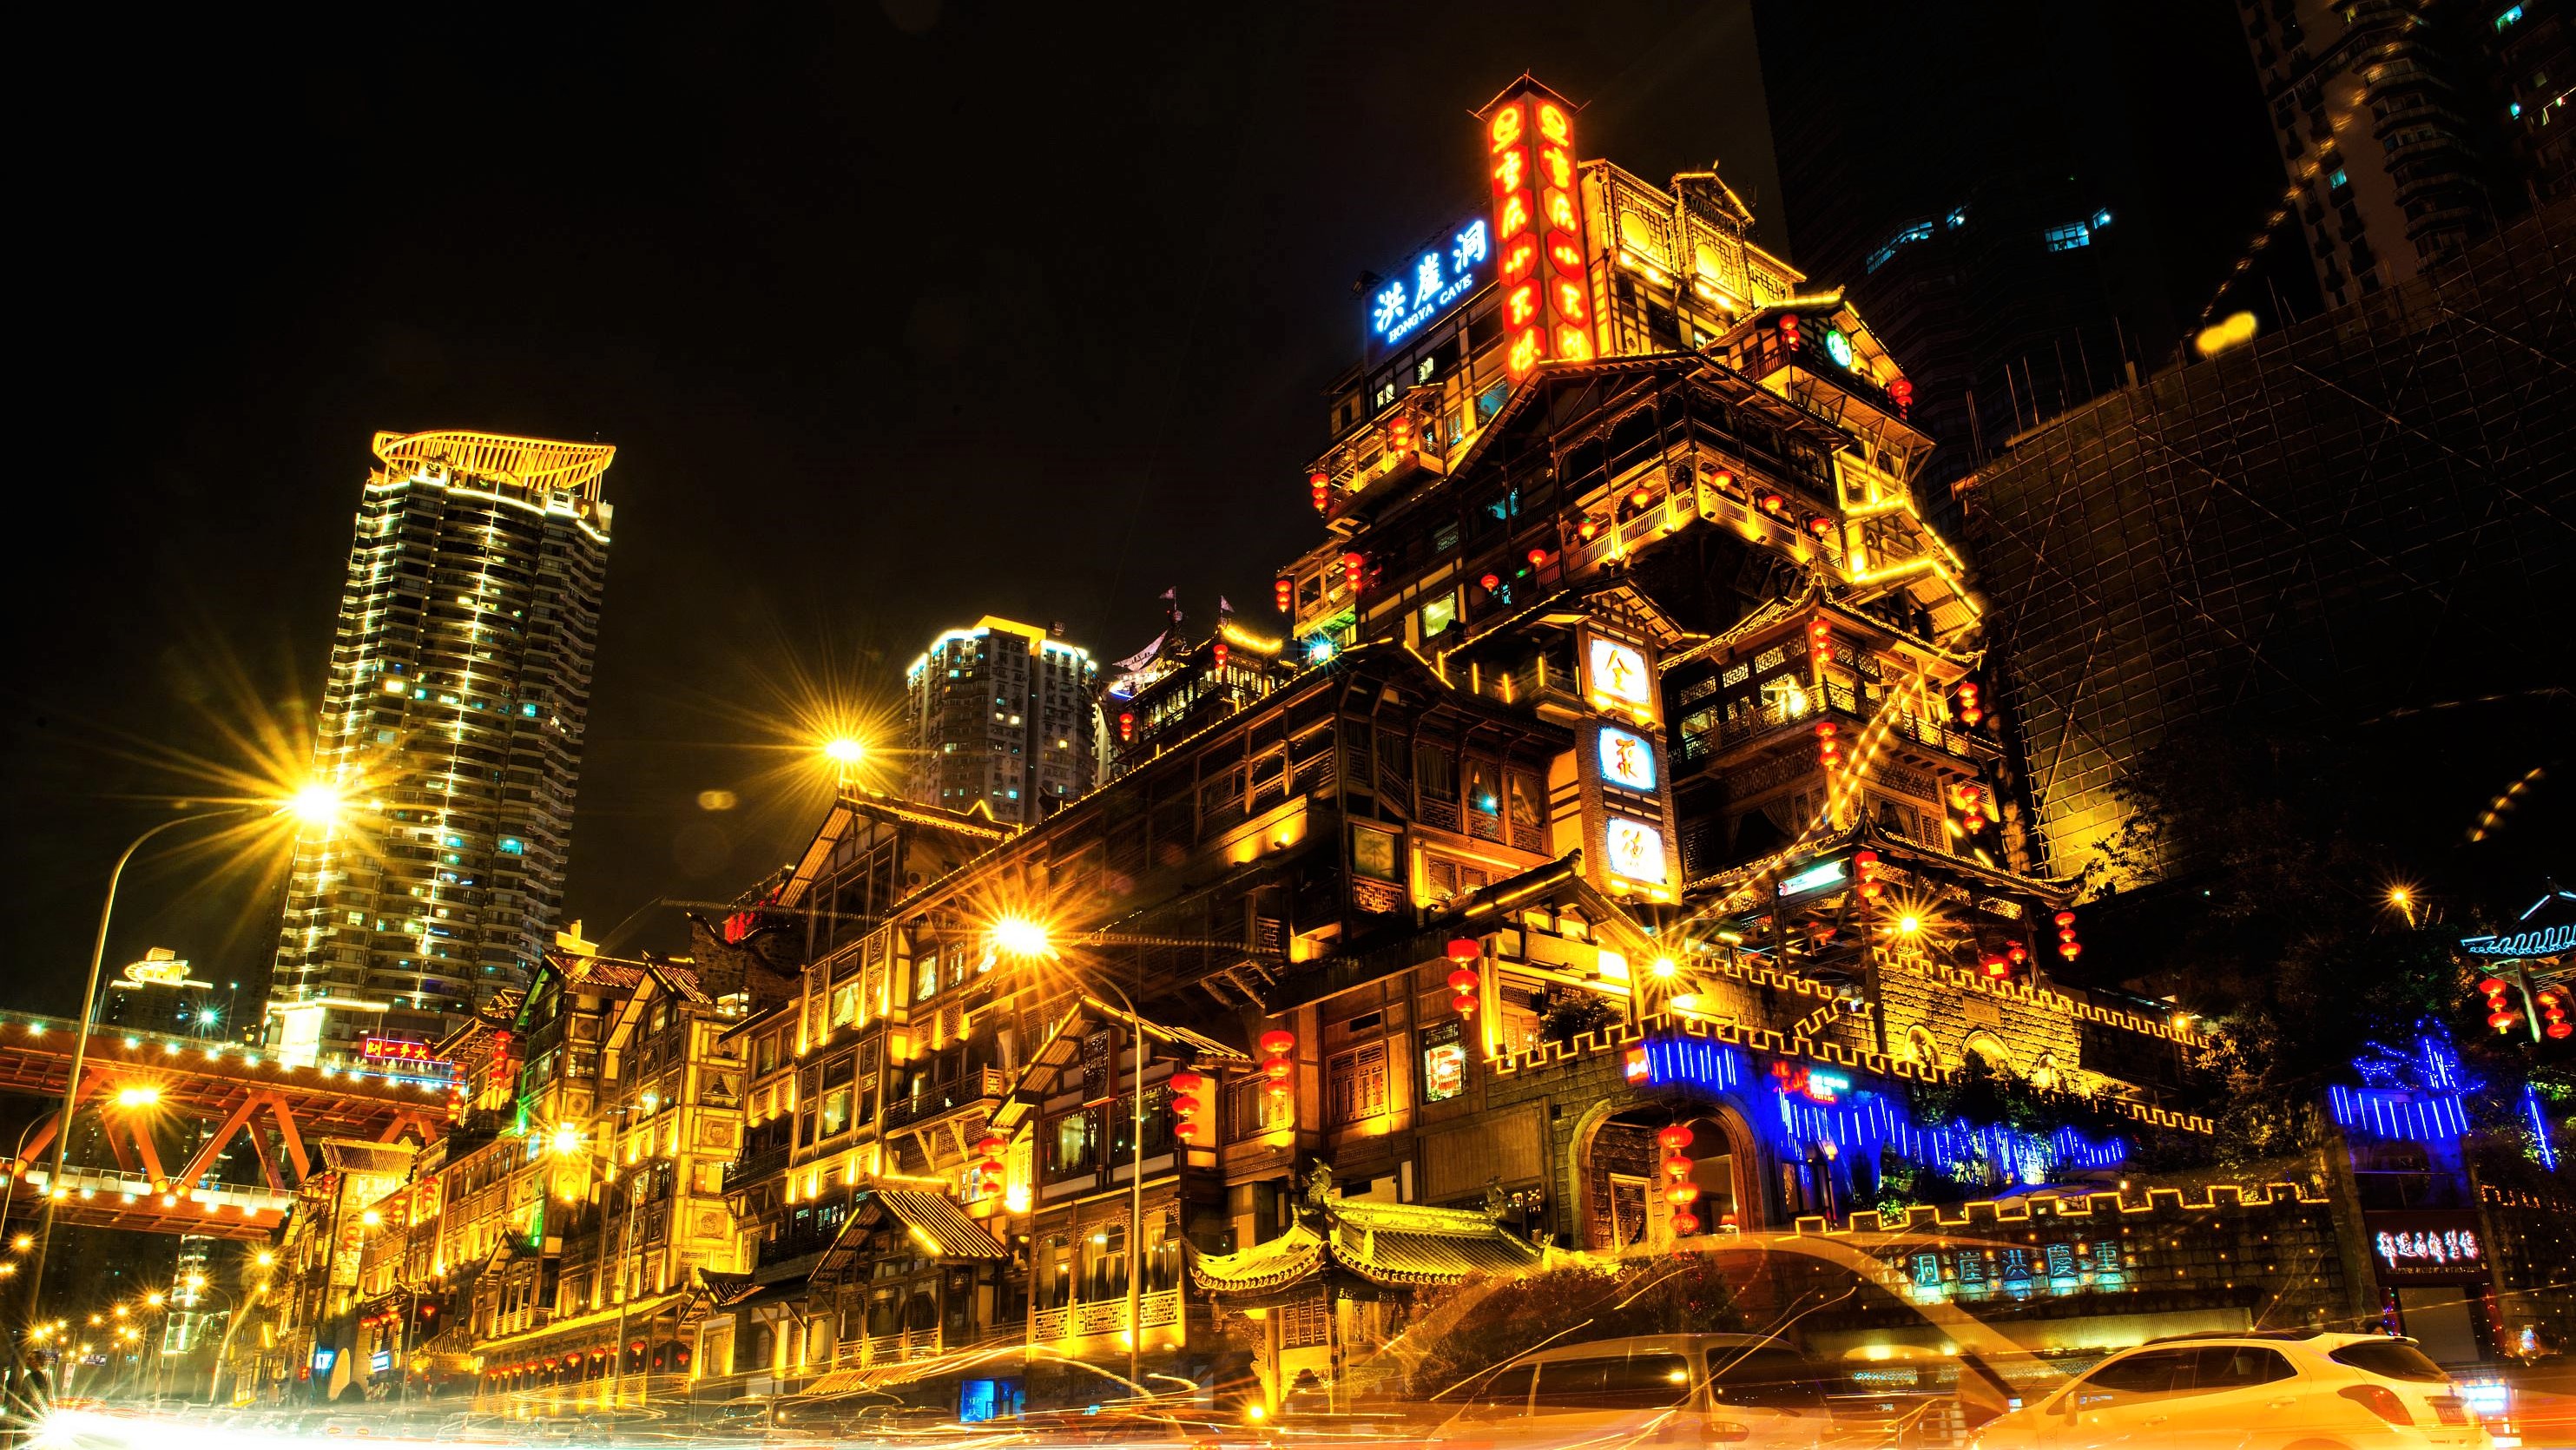 重庆,一座一夜之间火了的网红城市